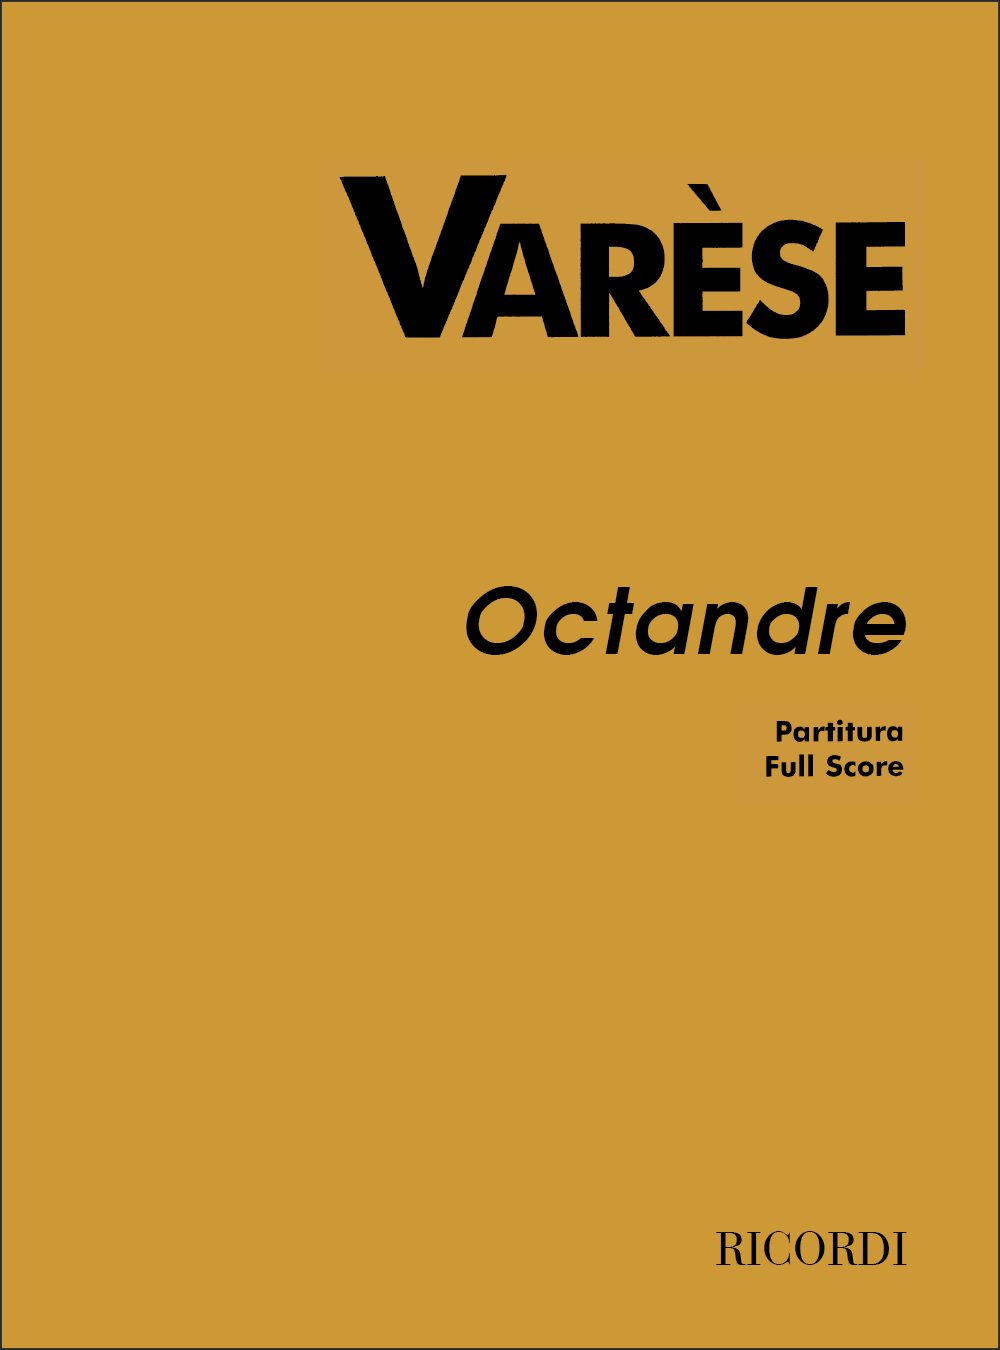 Edgar Varse: Octandre: Orchestra